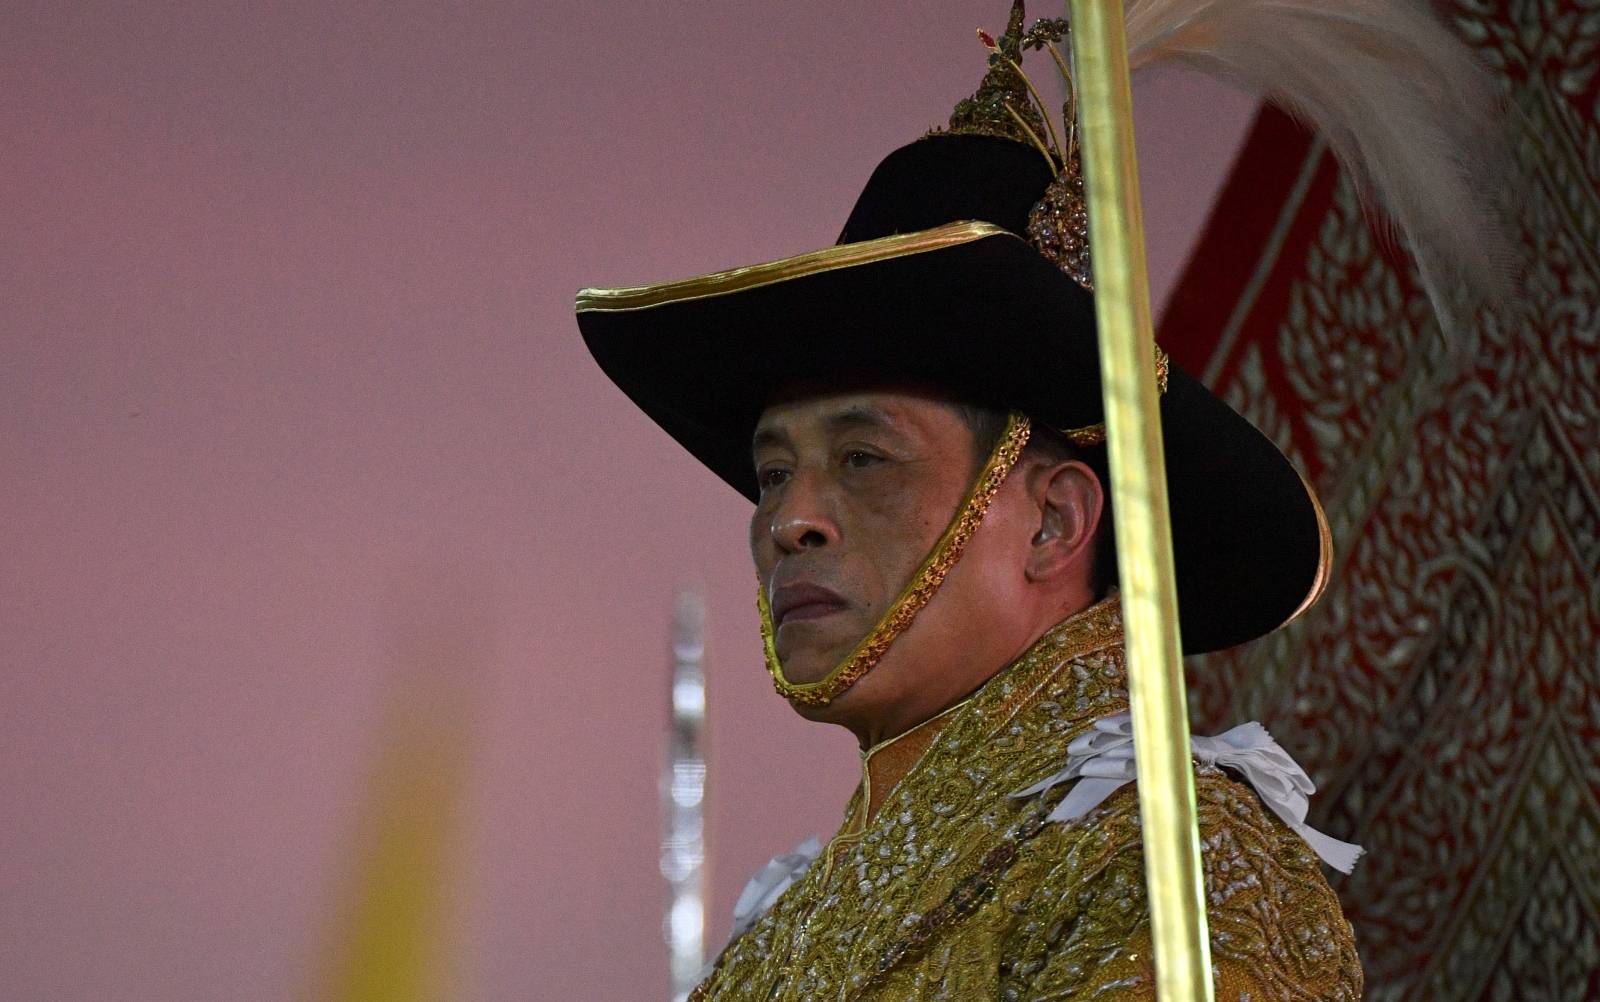 Thailand's King Maha Vajiralongkorn takes part in a procession near the Grand Palace in Bangkok